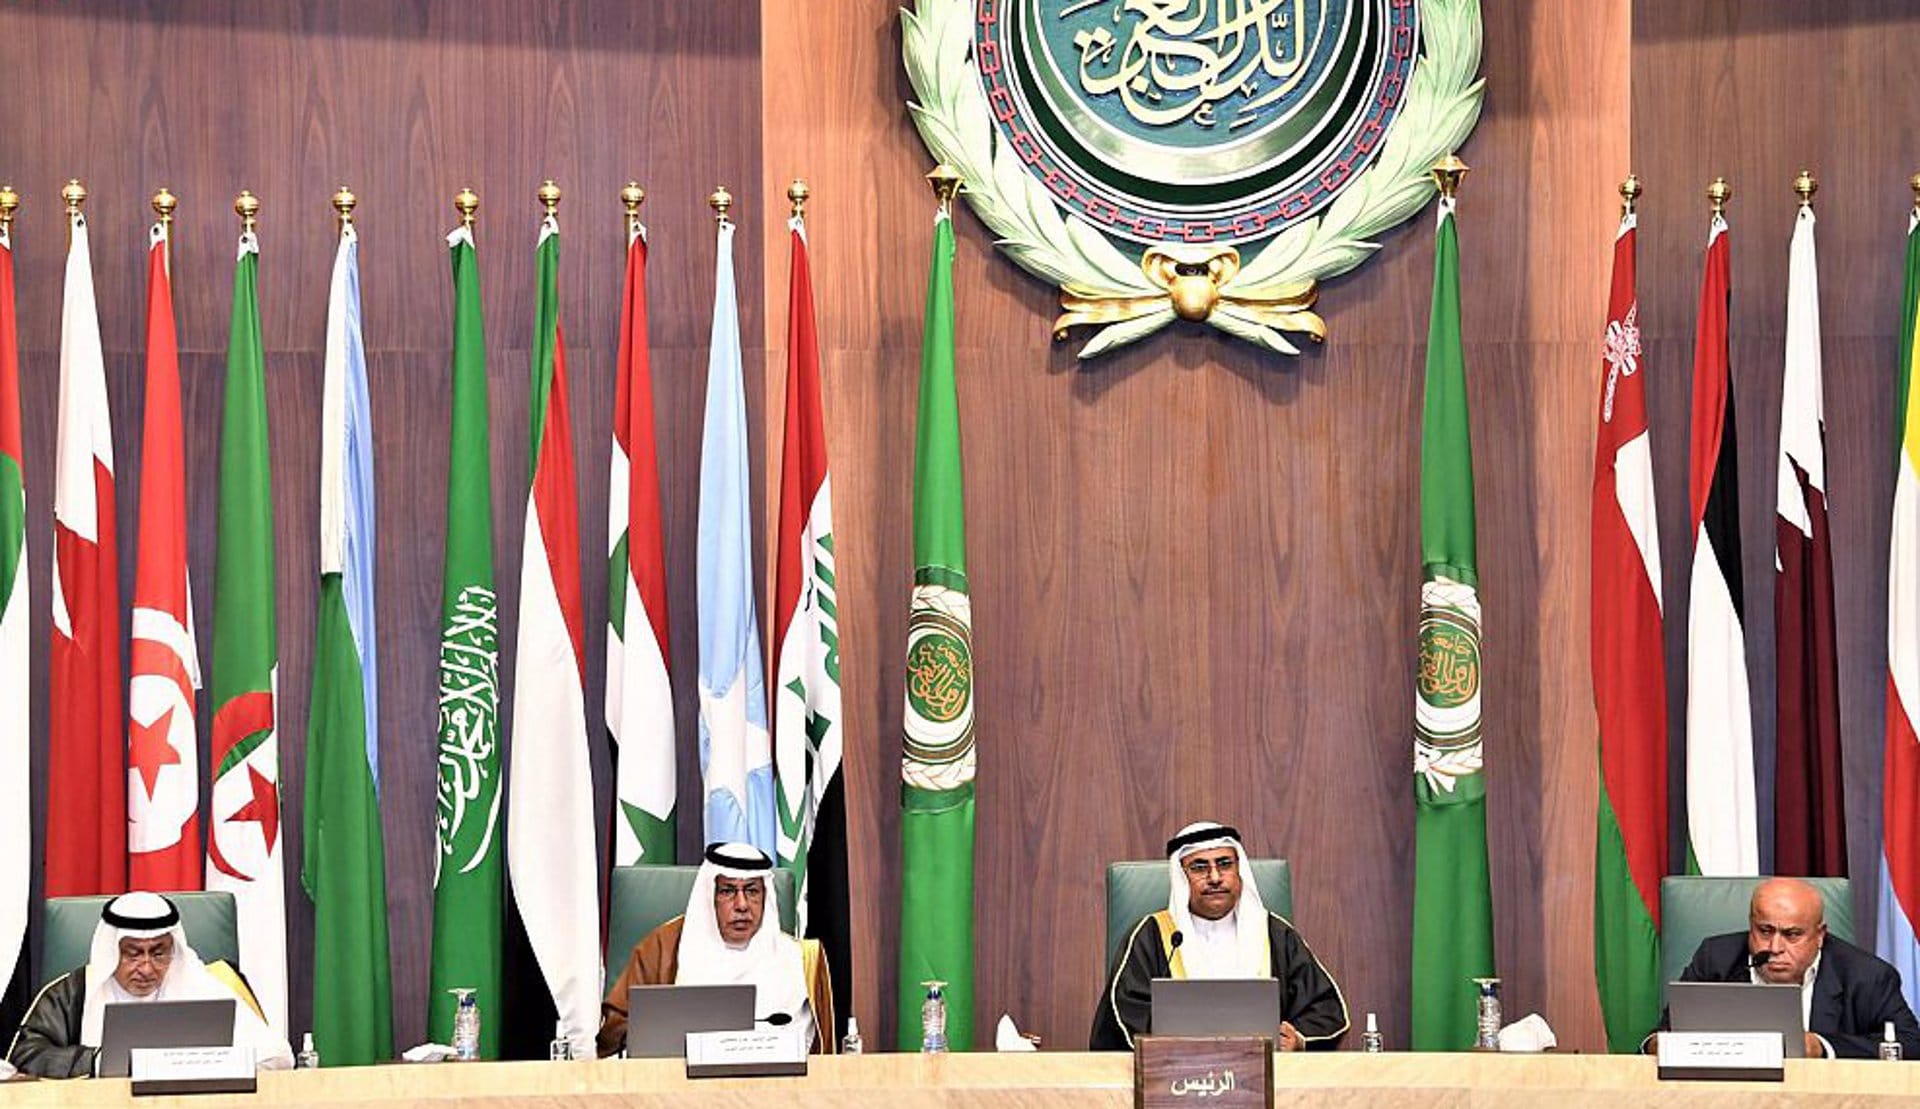 La Liga Árabe readmite a Siria en la organización después de 12 años suspendida